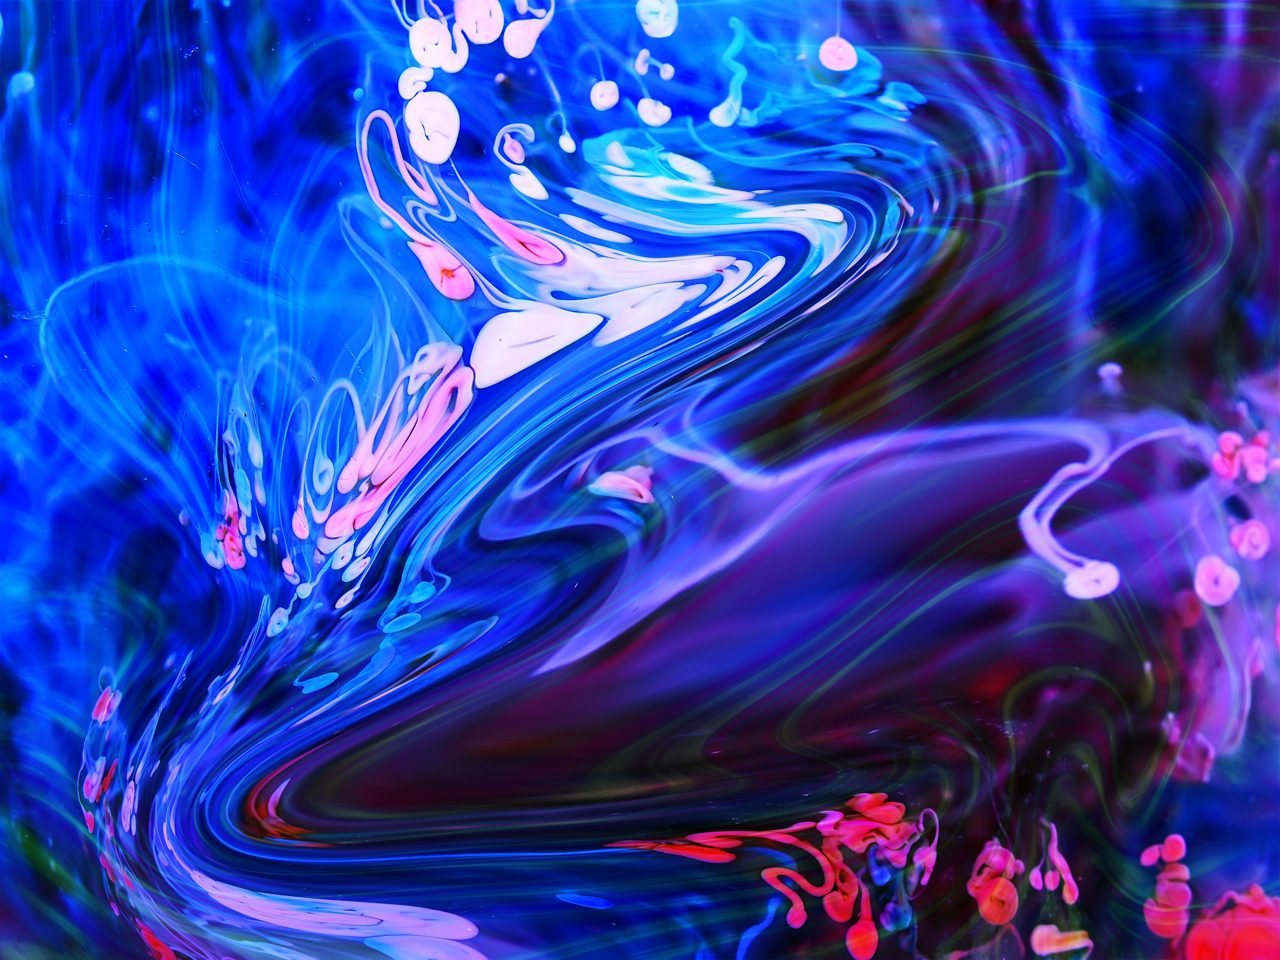 Pintura en espiral azul, rosa y púrpura